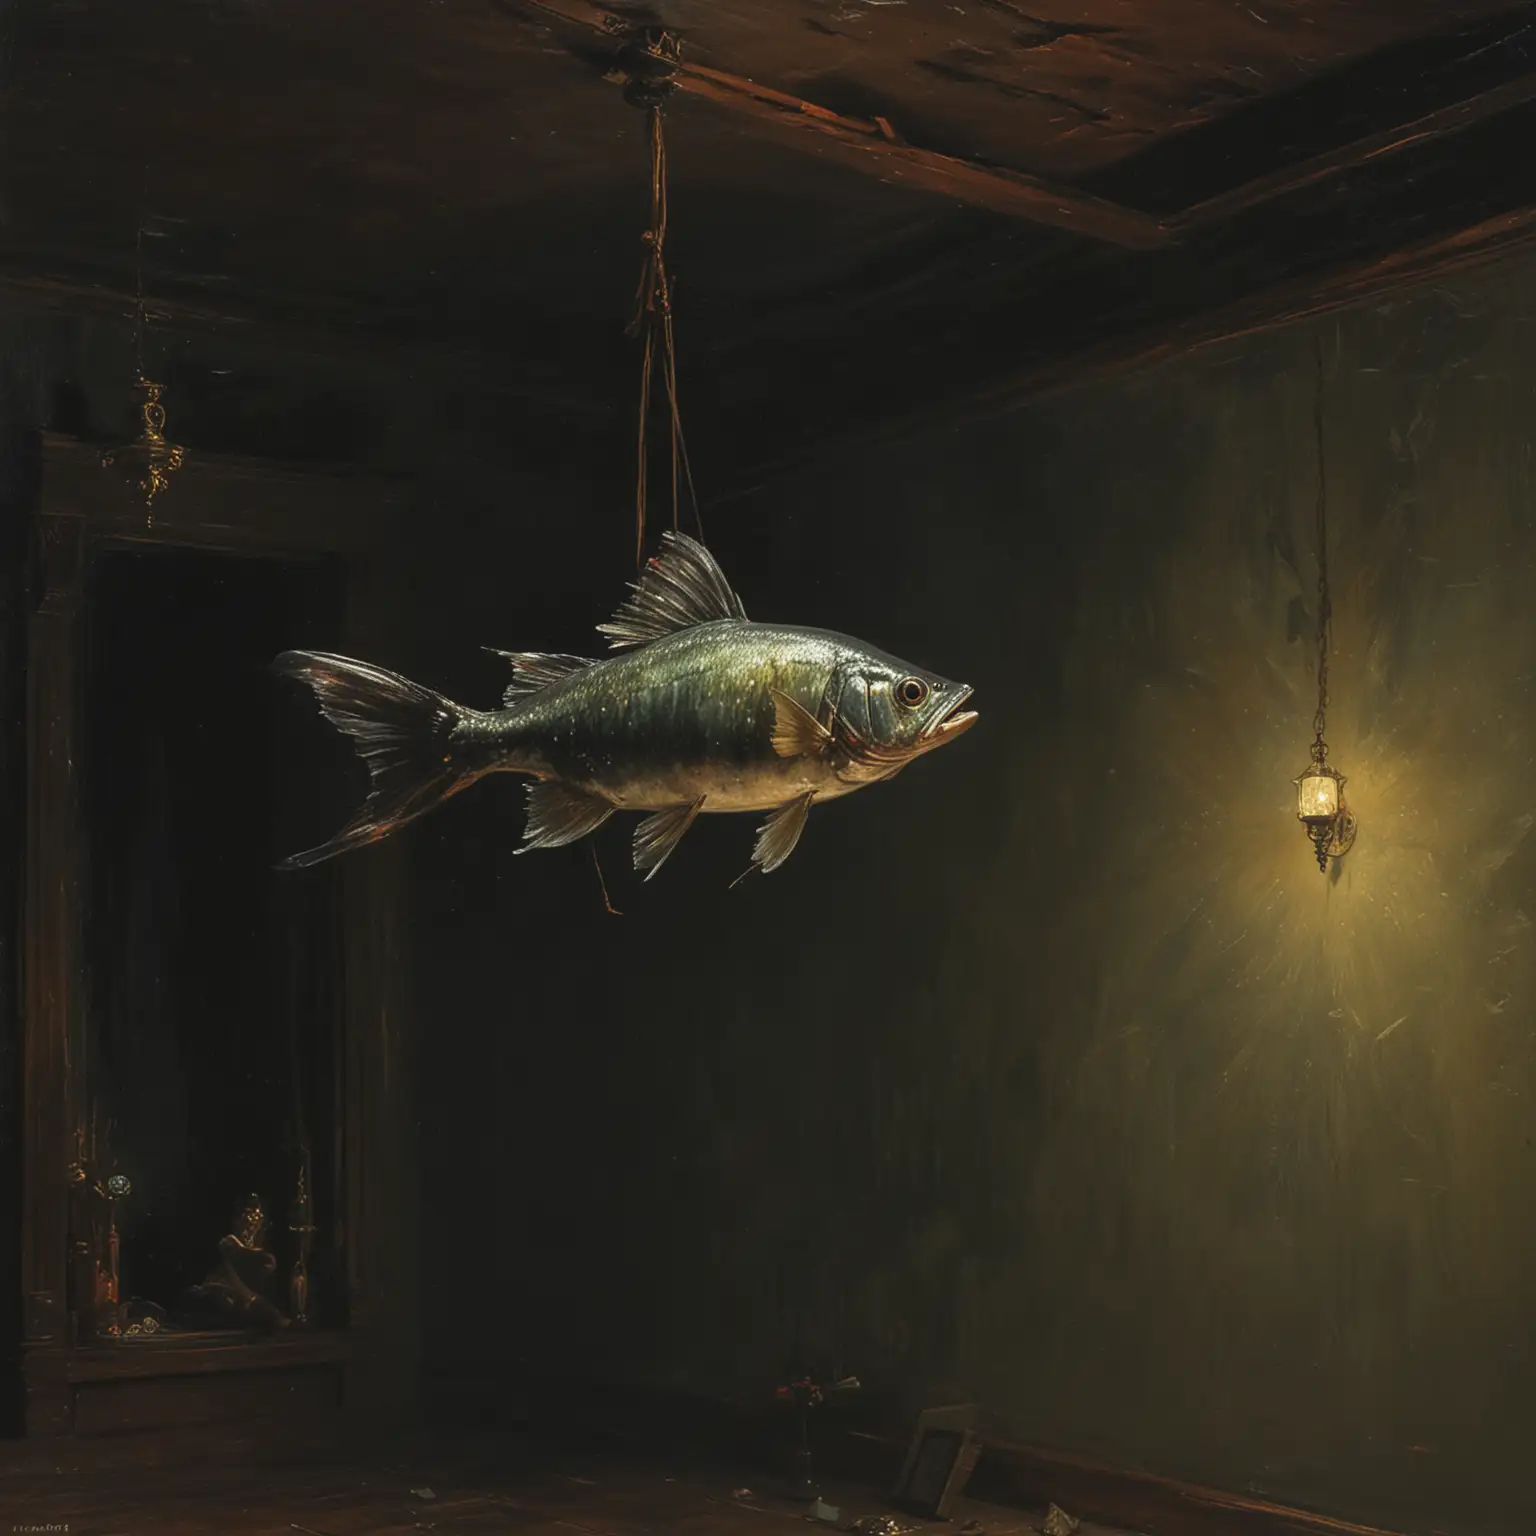 pintura al oleo de ilya repin acerca de un pez volando en una habitación oscura